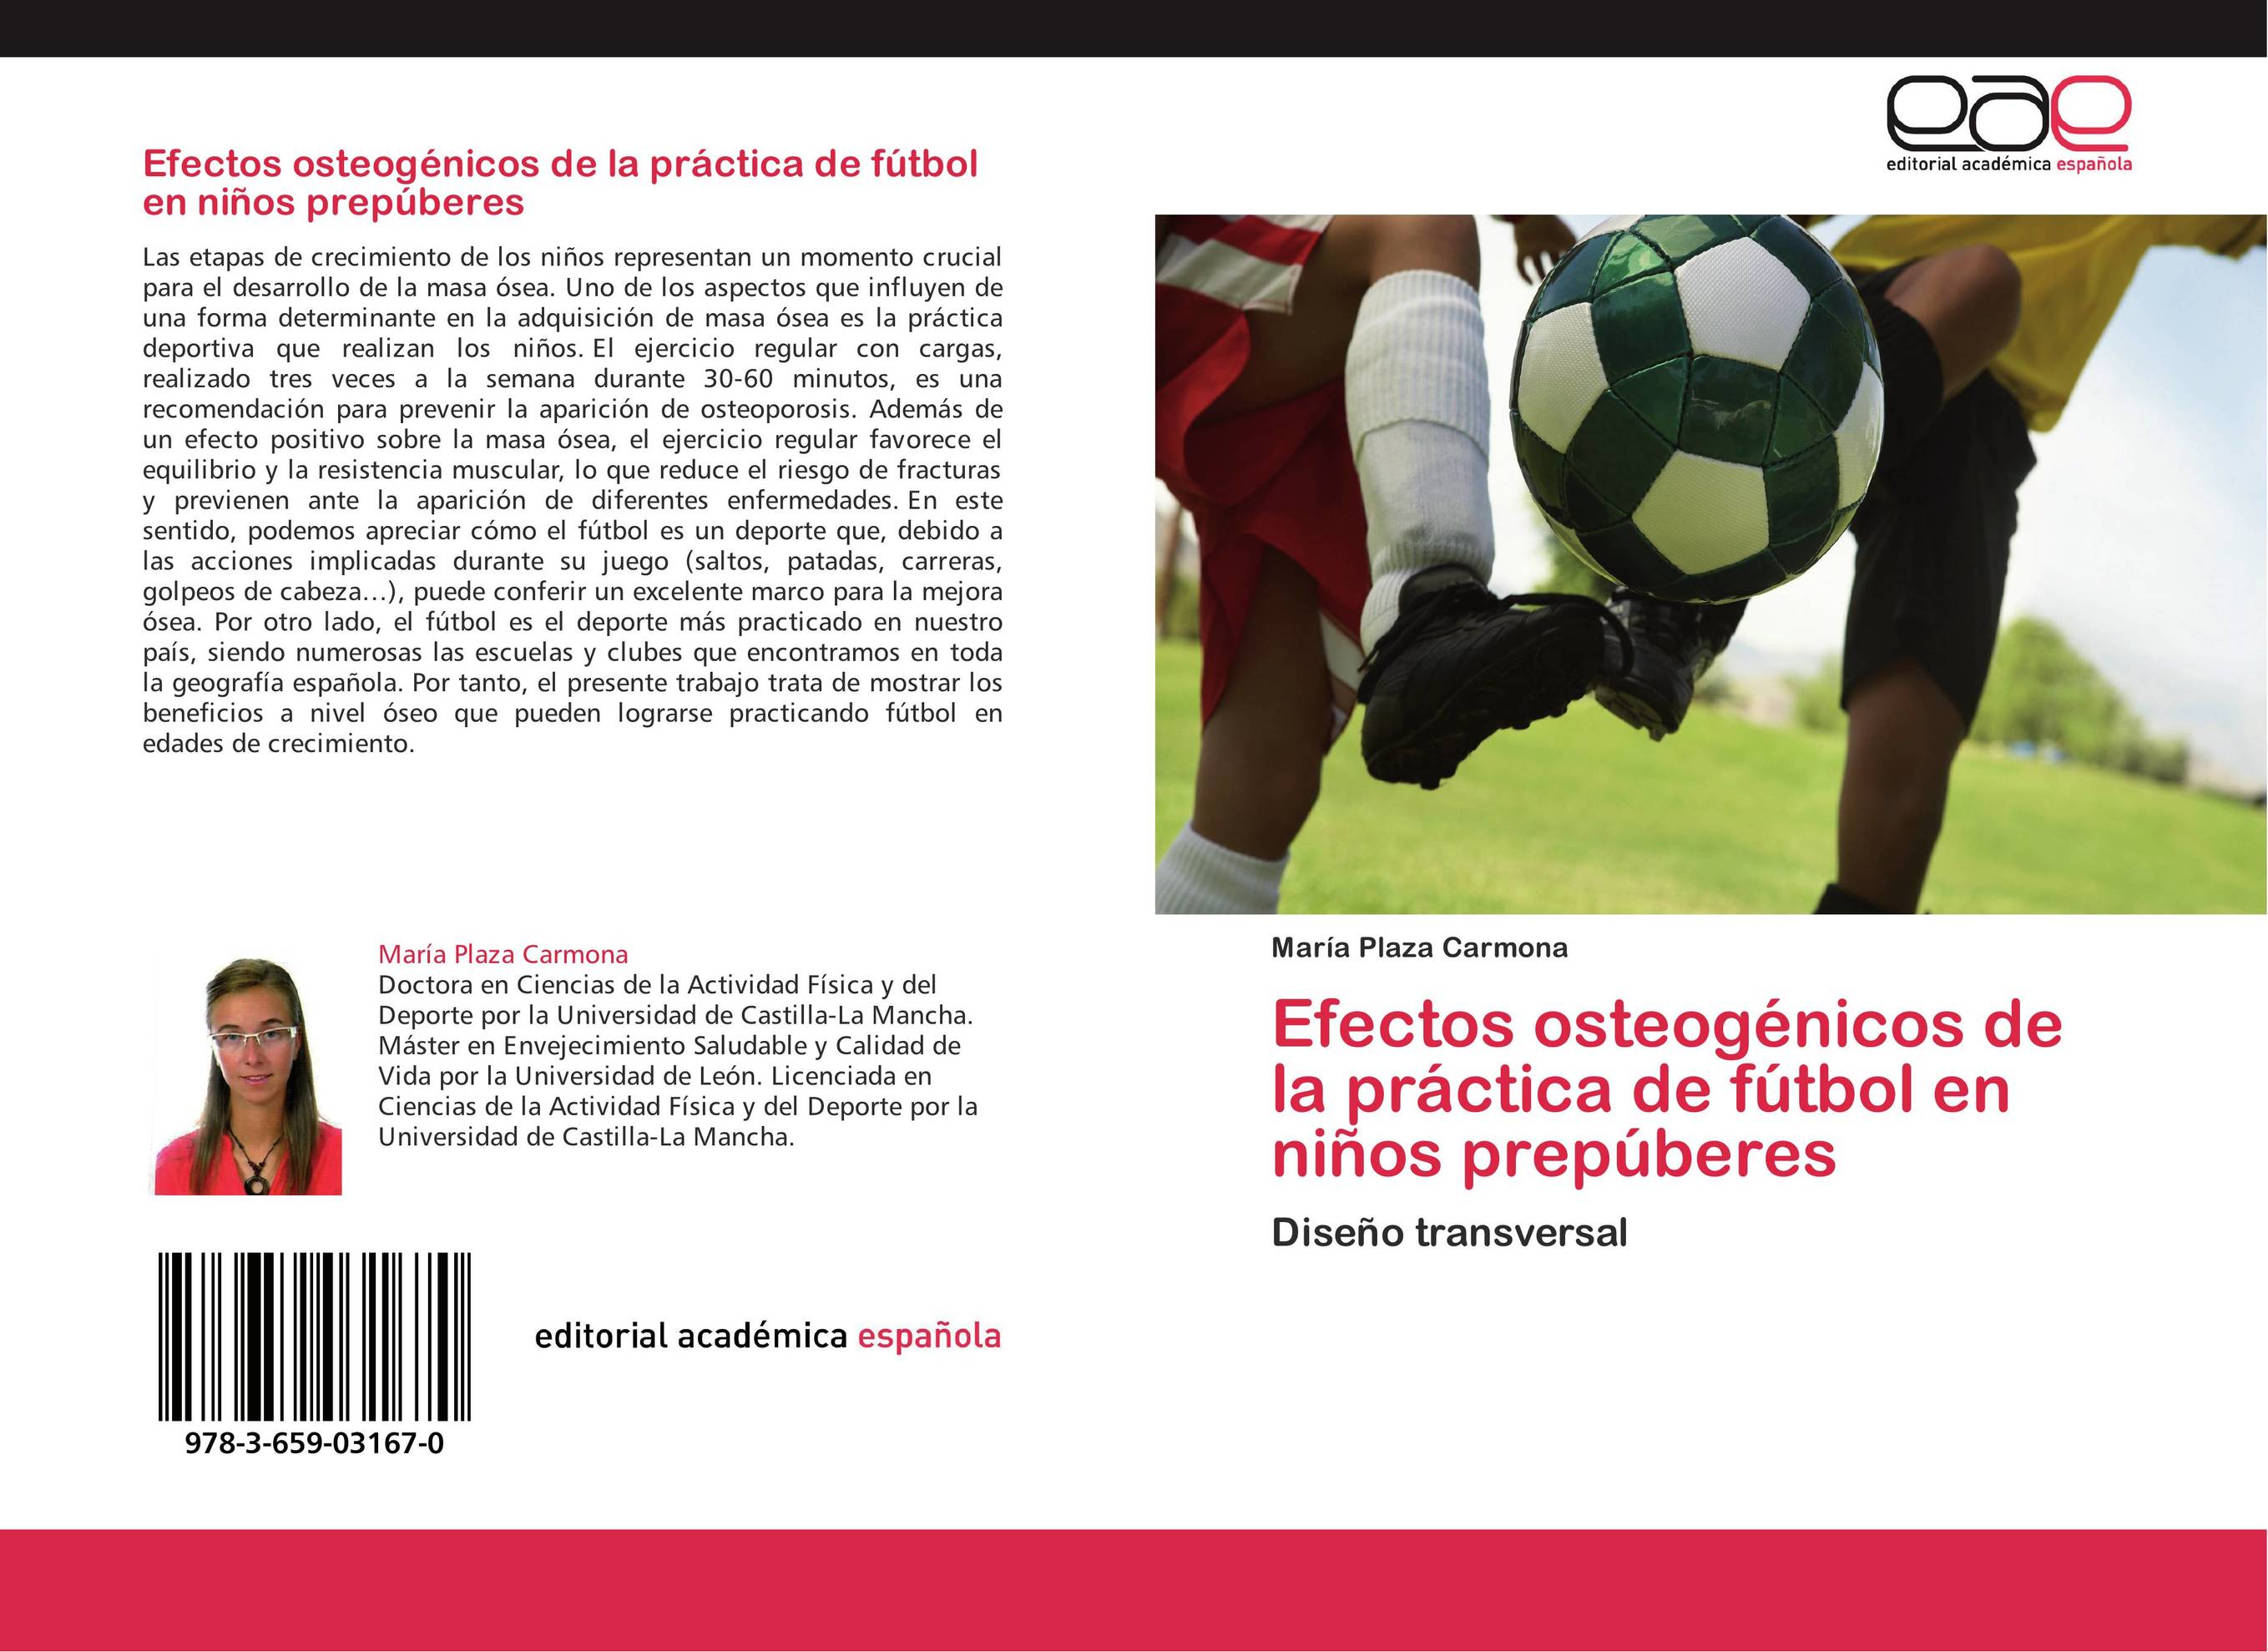 Efectos osteogénicos de la práctica de fútbol en niños prepúberes